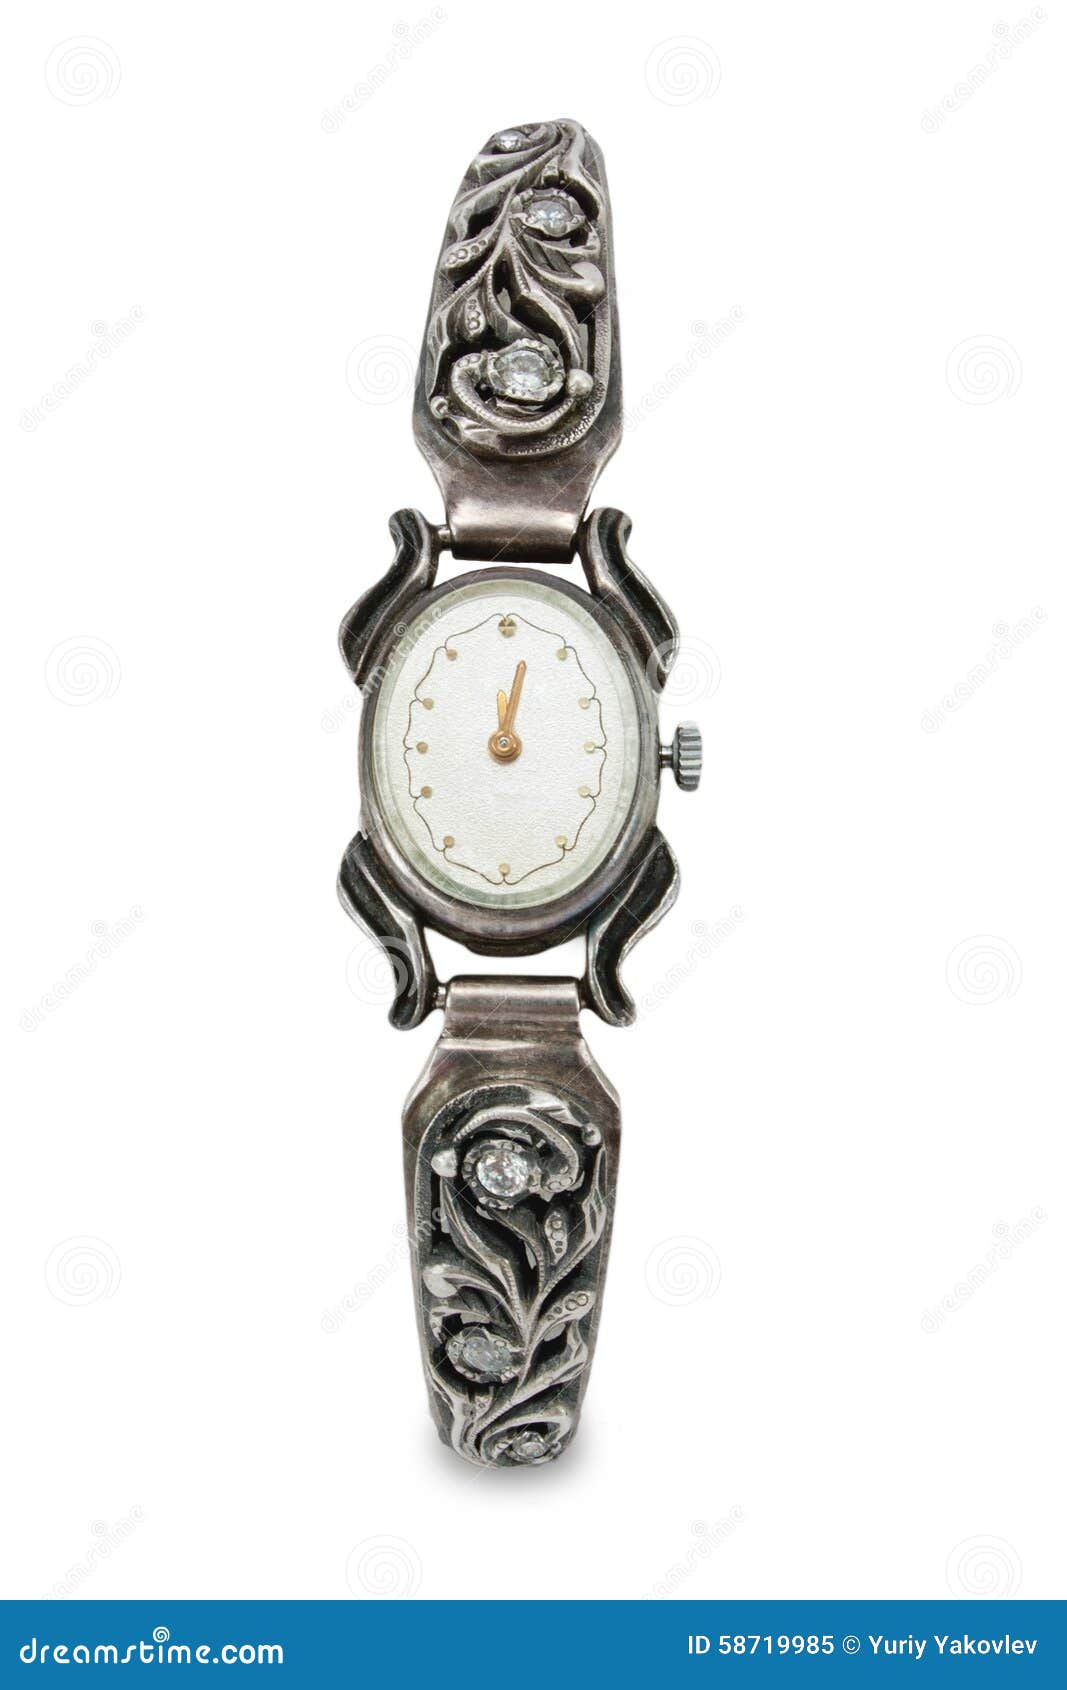 Bracelet Watch For Women